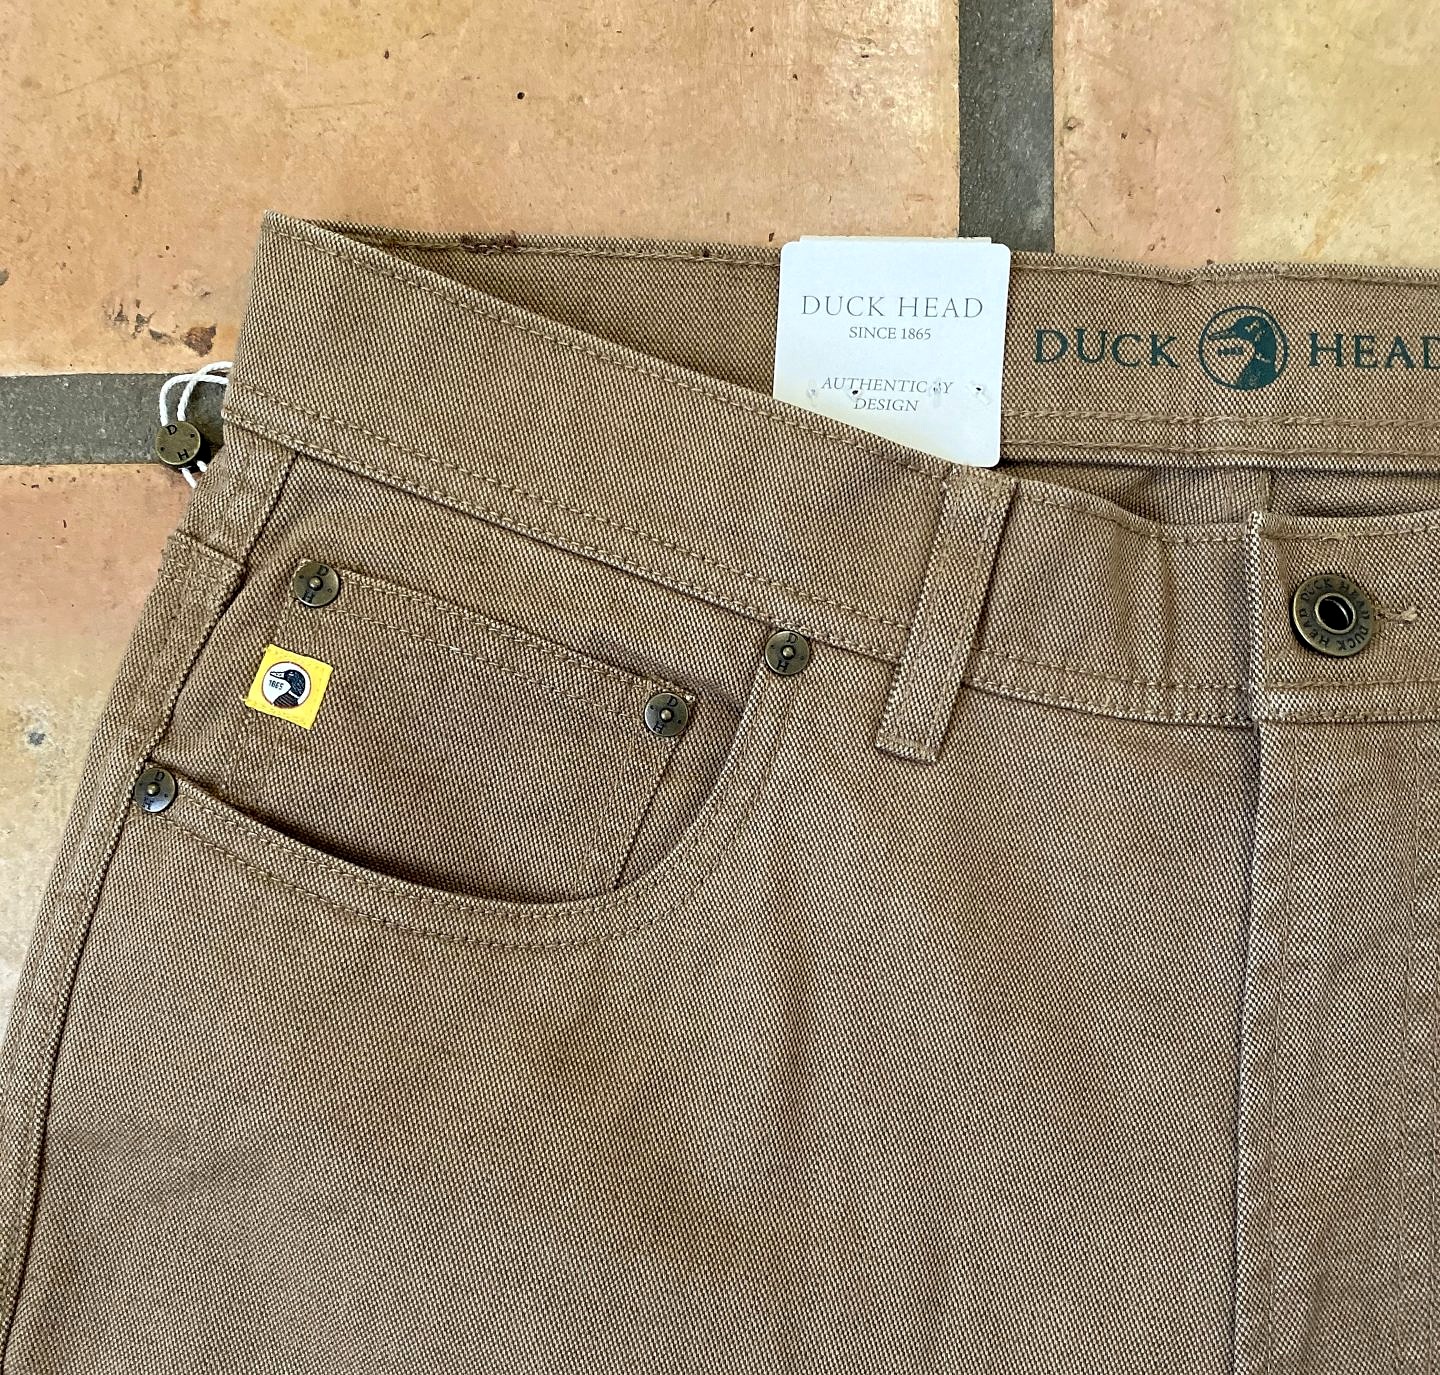 Duck Head Shoreline Five-Pocket Pants - Stone – Chancellor's